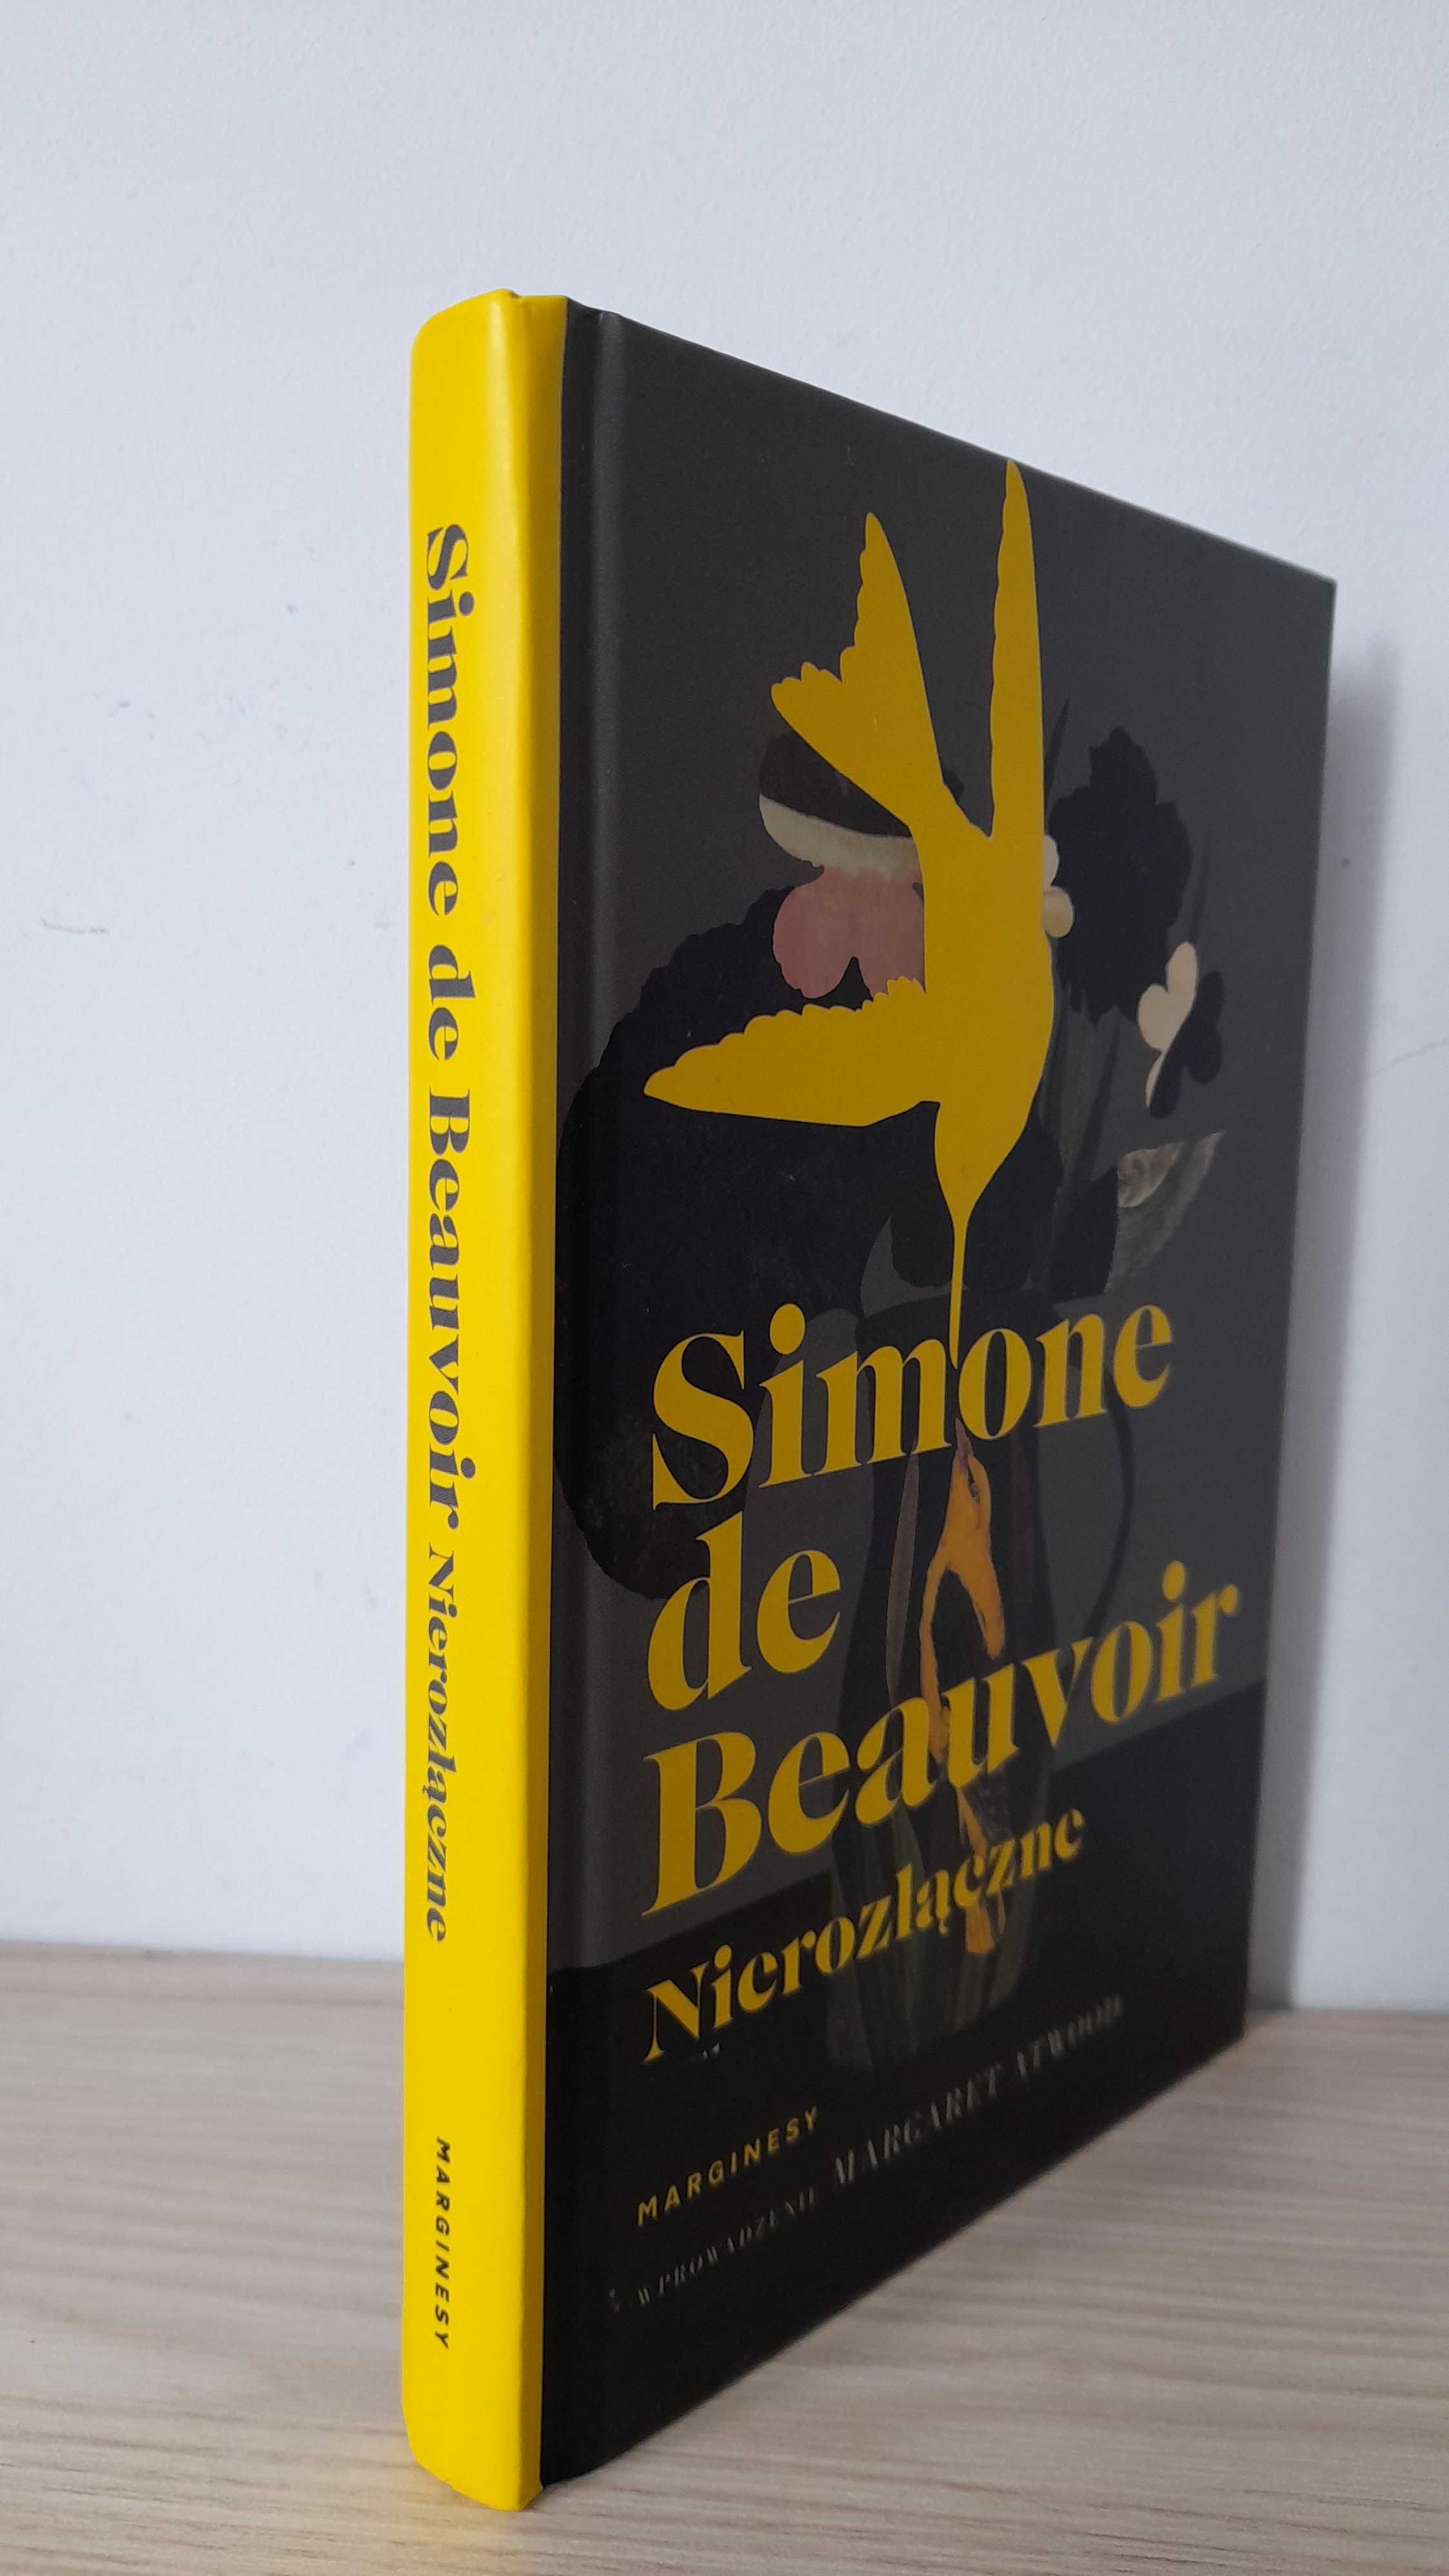 Nierozłączne Simone de Beauvoir